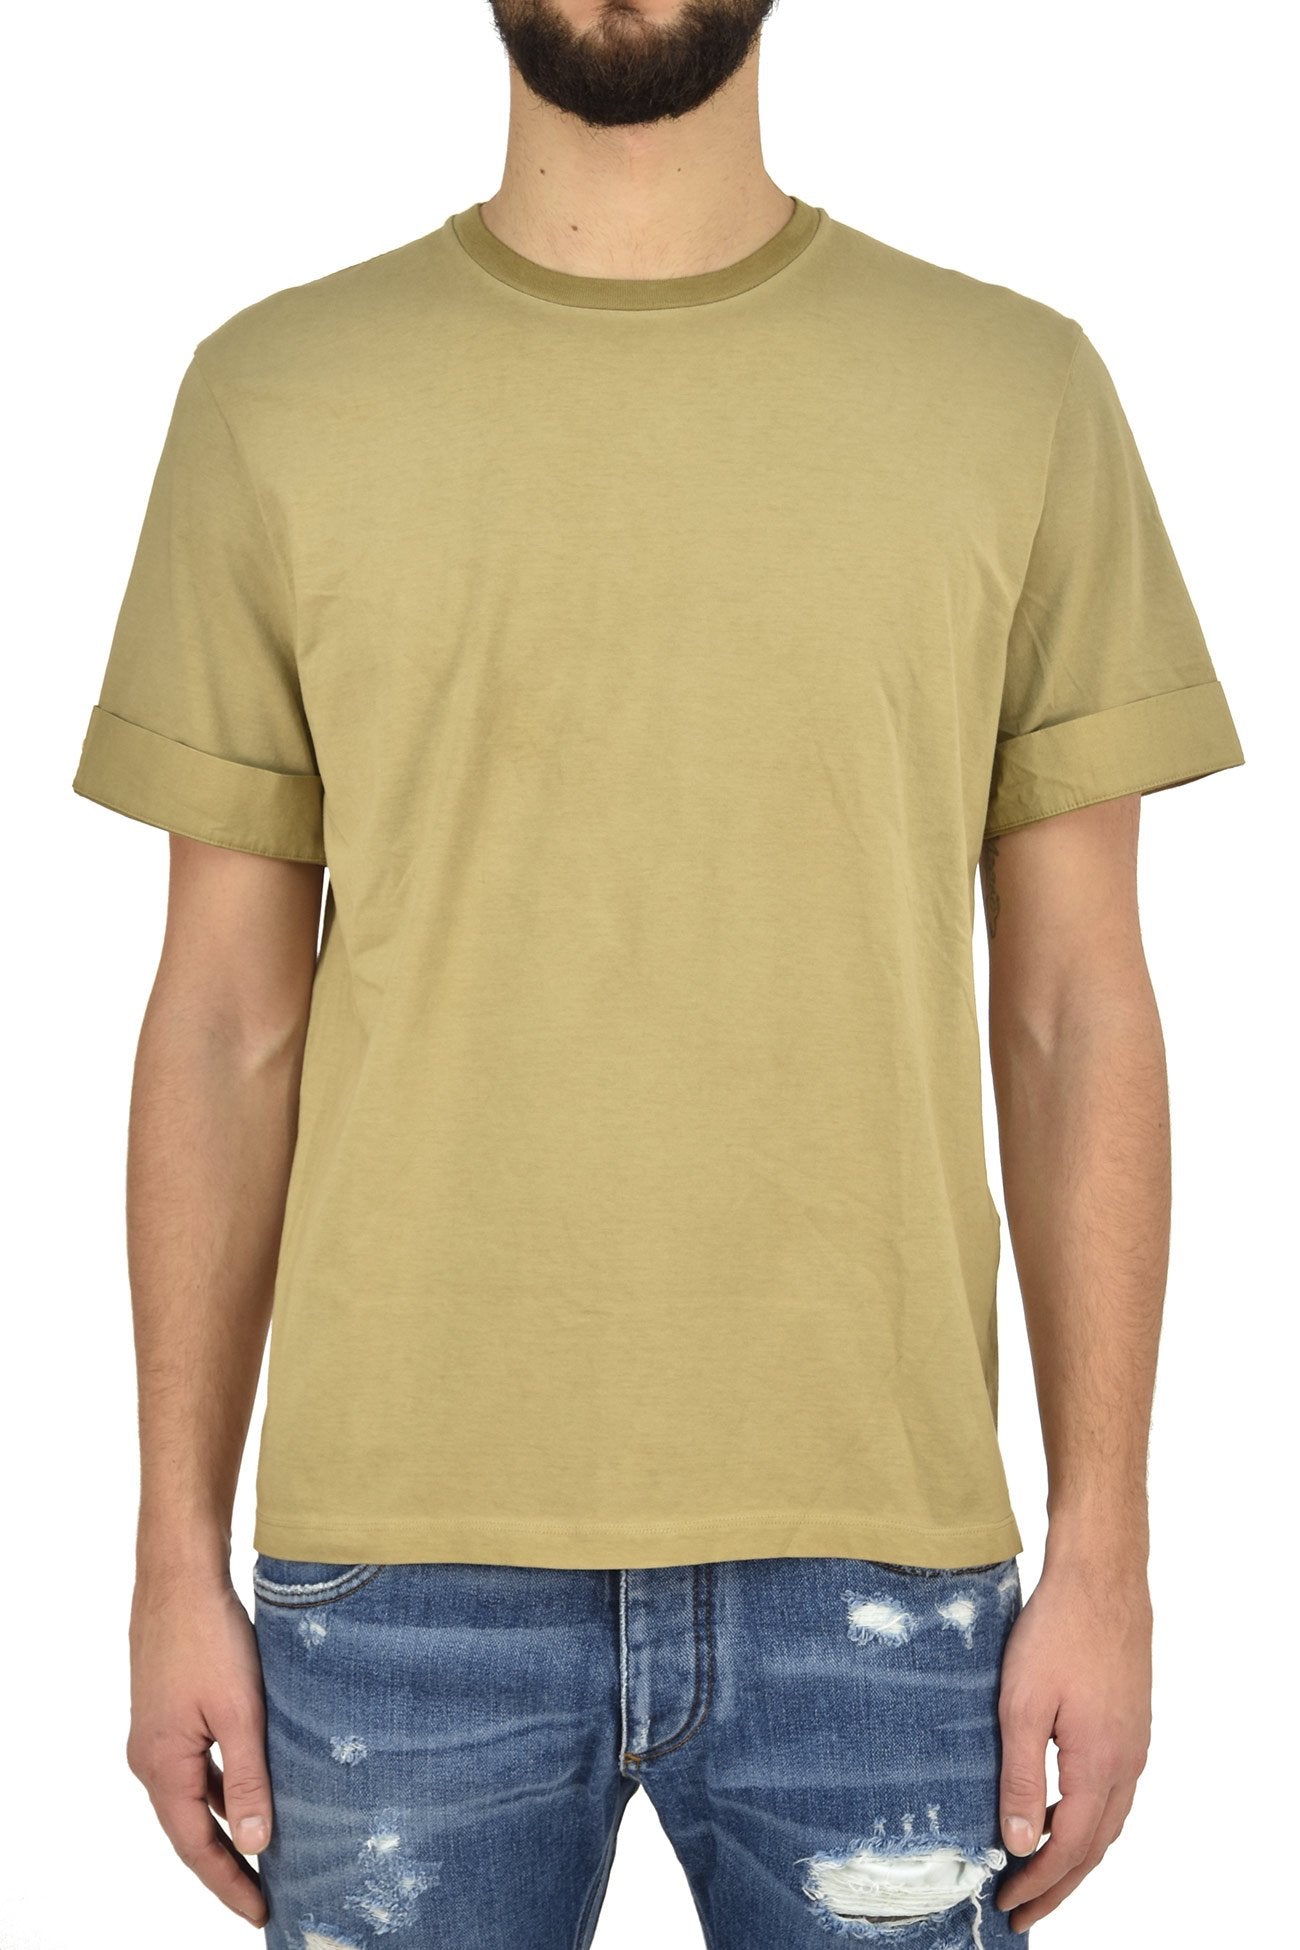 Neil Barrett T-shirt Marrone Uomo Cotone Stampa Grafica Mod.BJT250SE574S1808